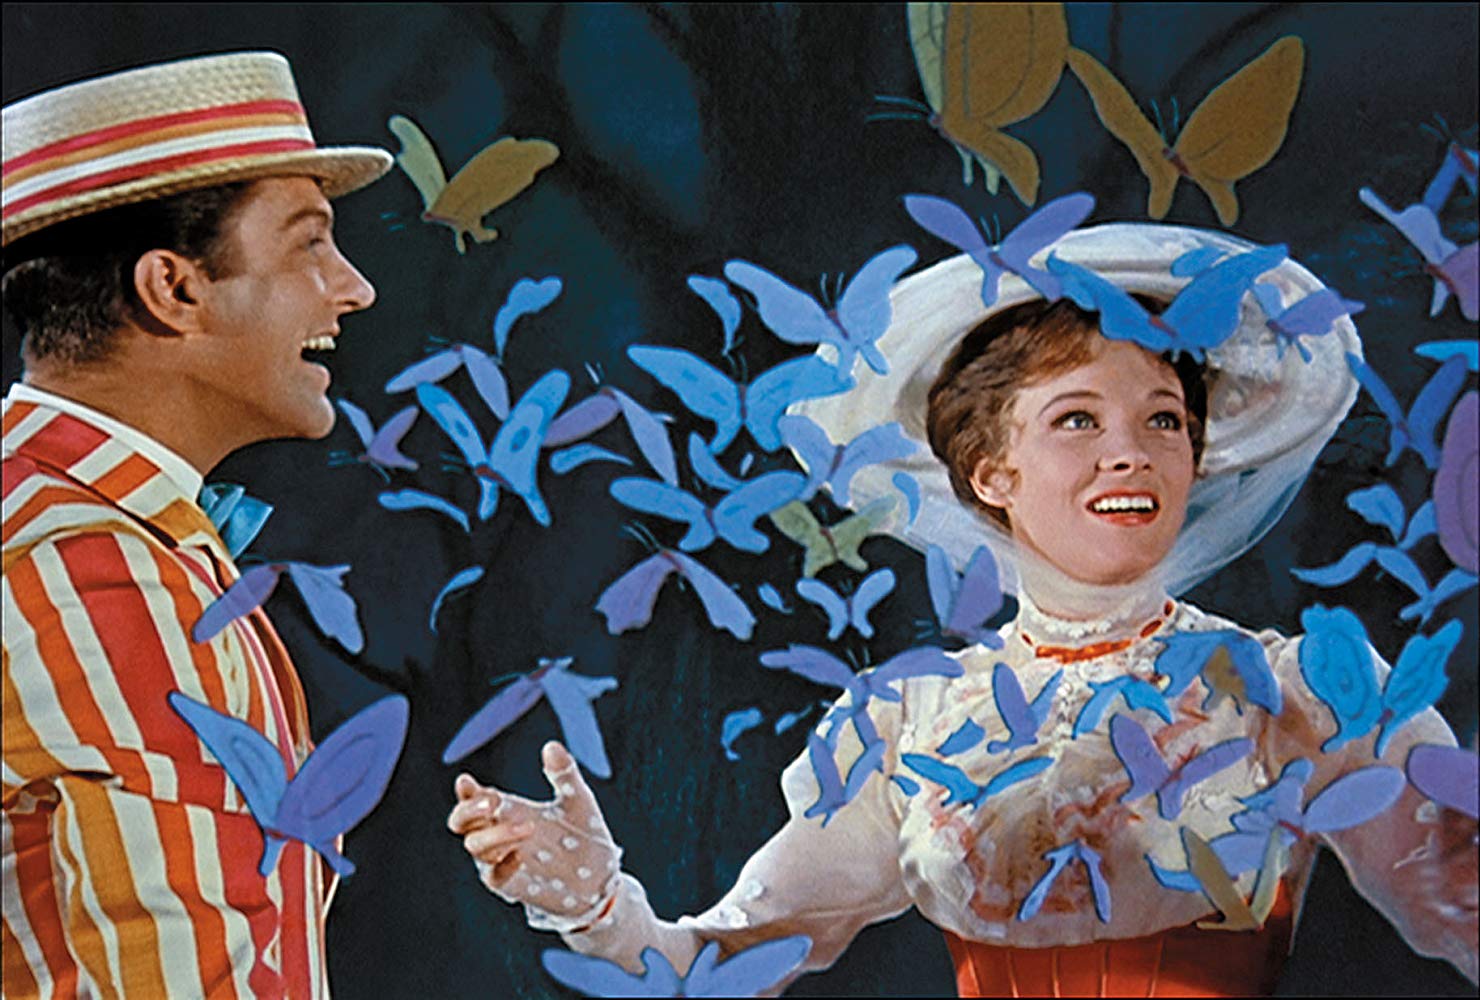 دانلود فیلم تخیلی مری پاپینز (Mary Poppins 1964) با دوبله فارسی